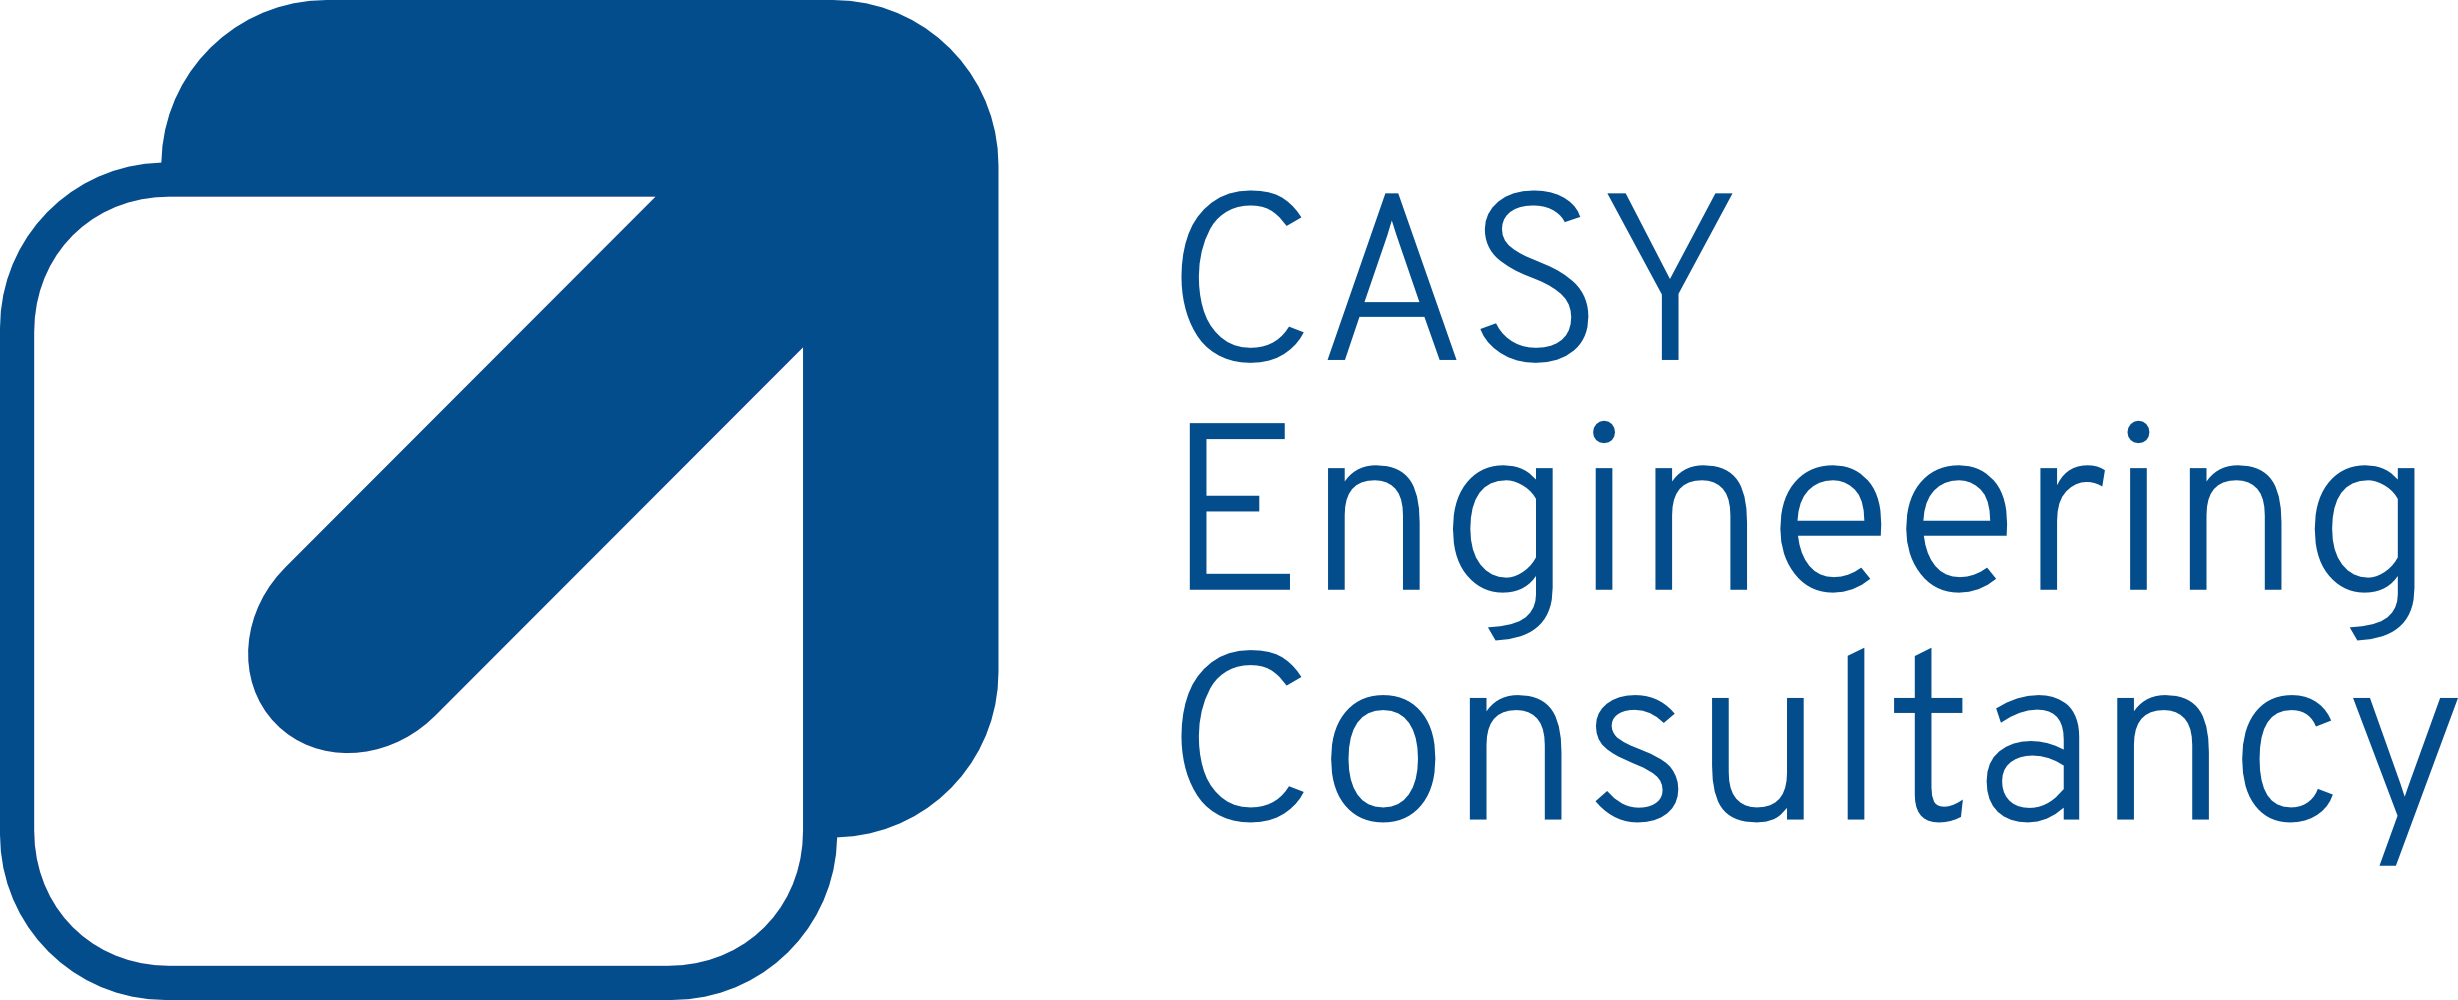 CASY Engineering Consultancy